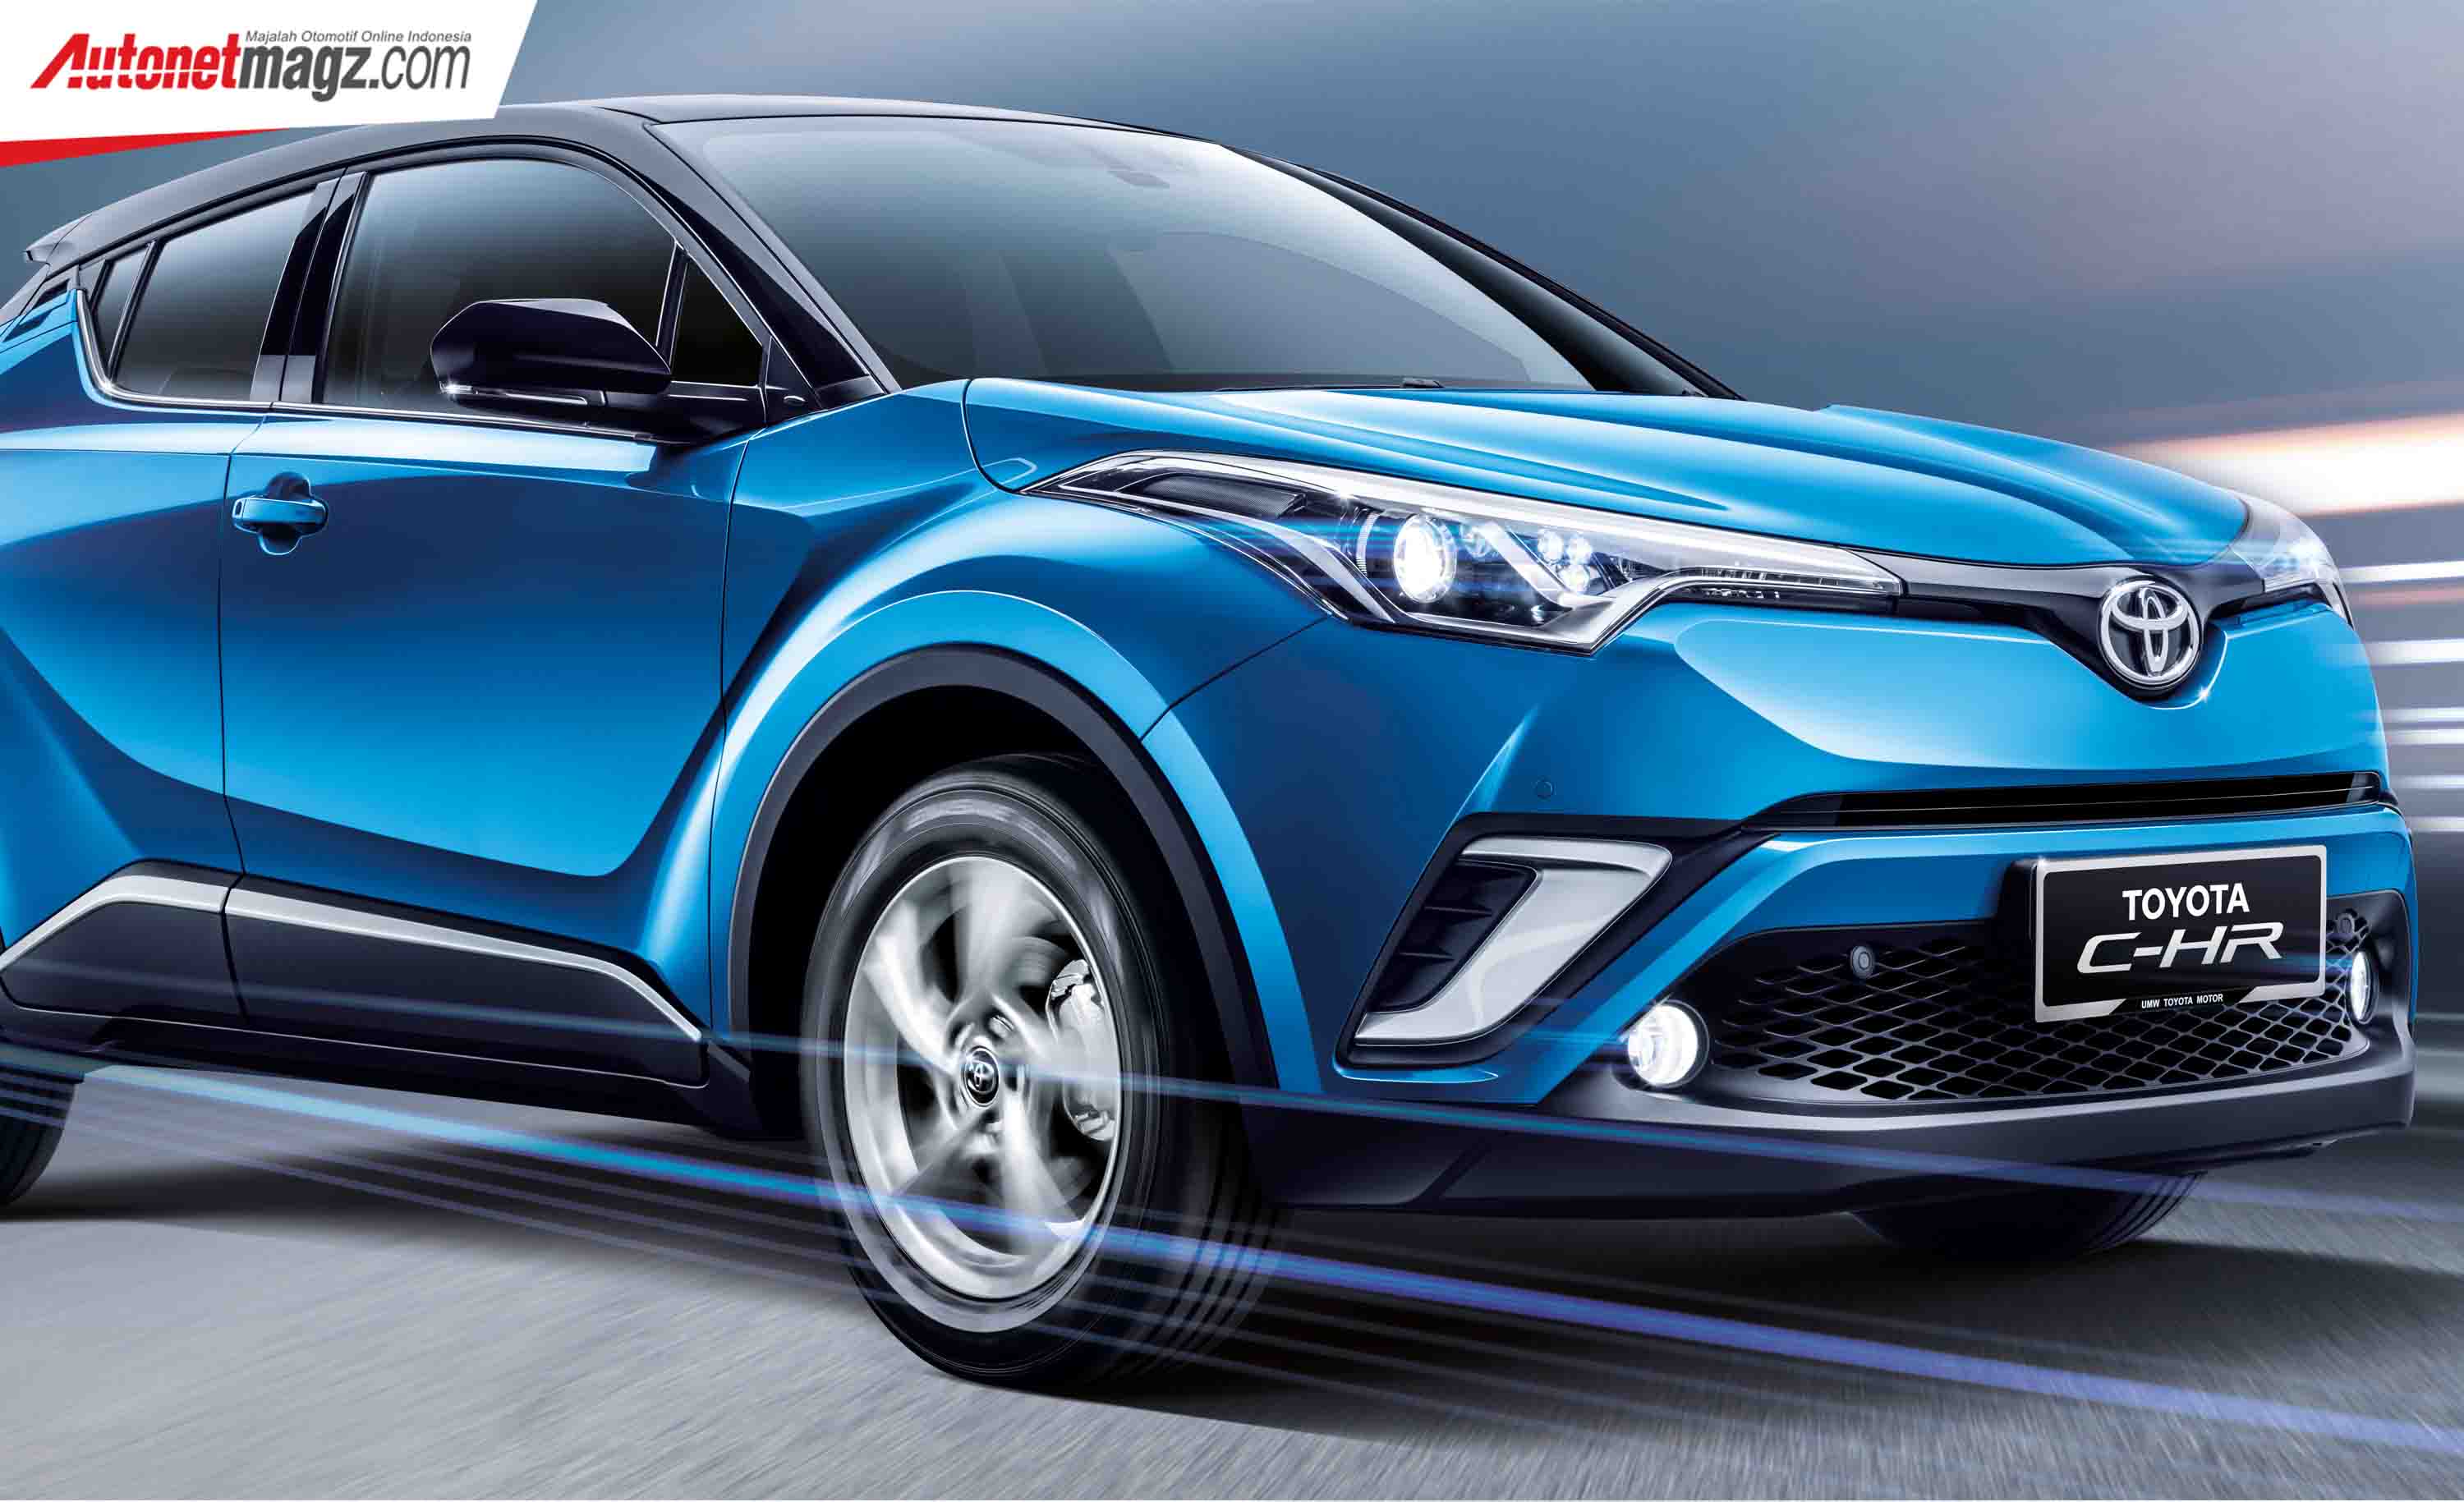 Berita, Toyota C-HR 2019: Toyota C-HR 2019 Rilis di Malaysia Dengan Aksesoris & Warna Baru, Harga 500 Jutaan!